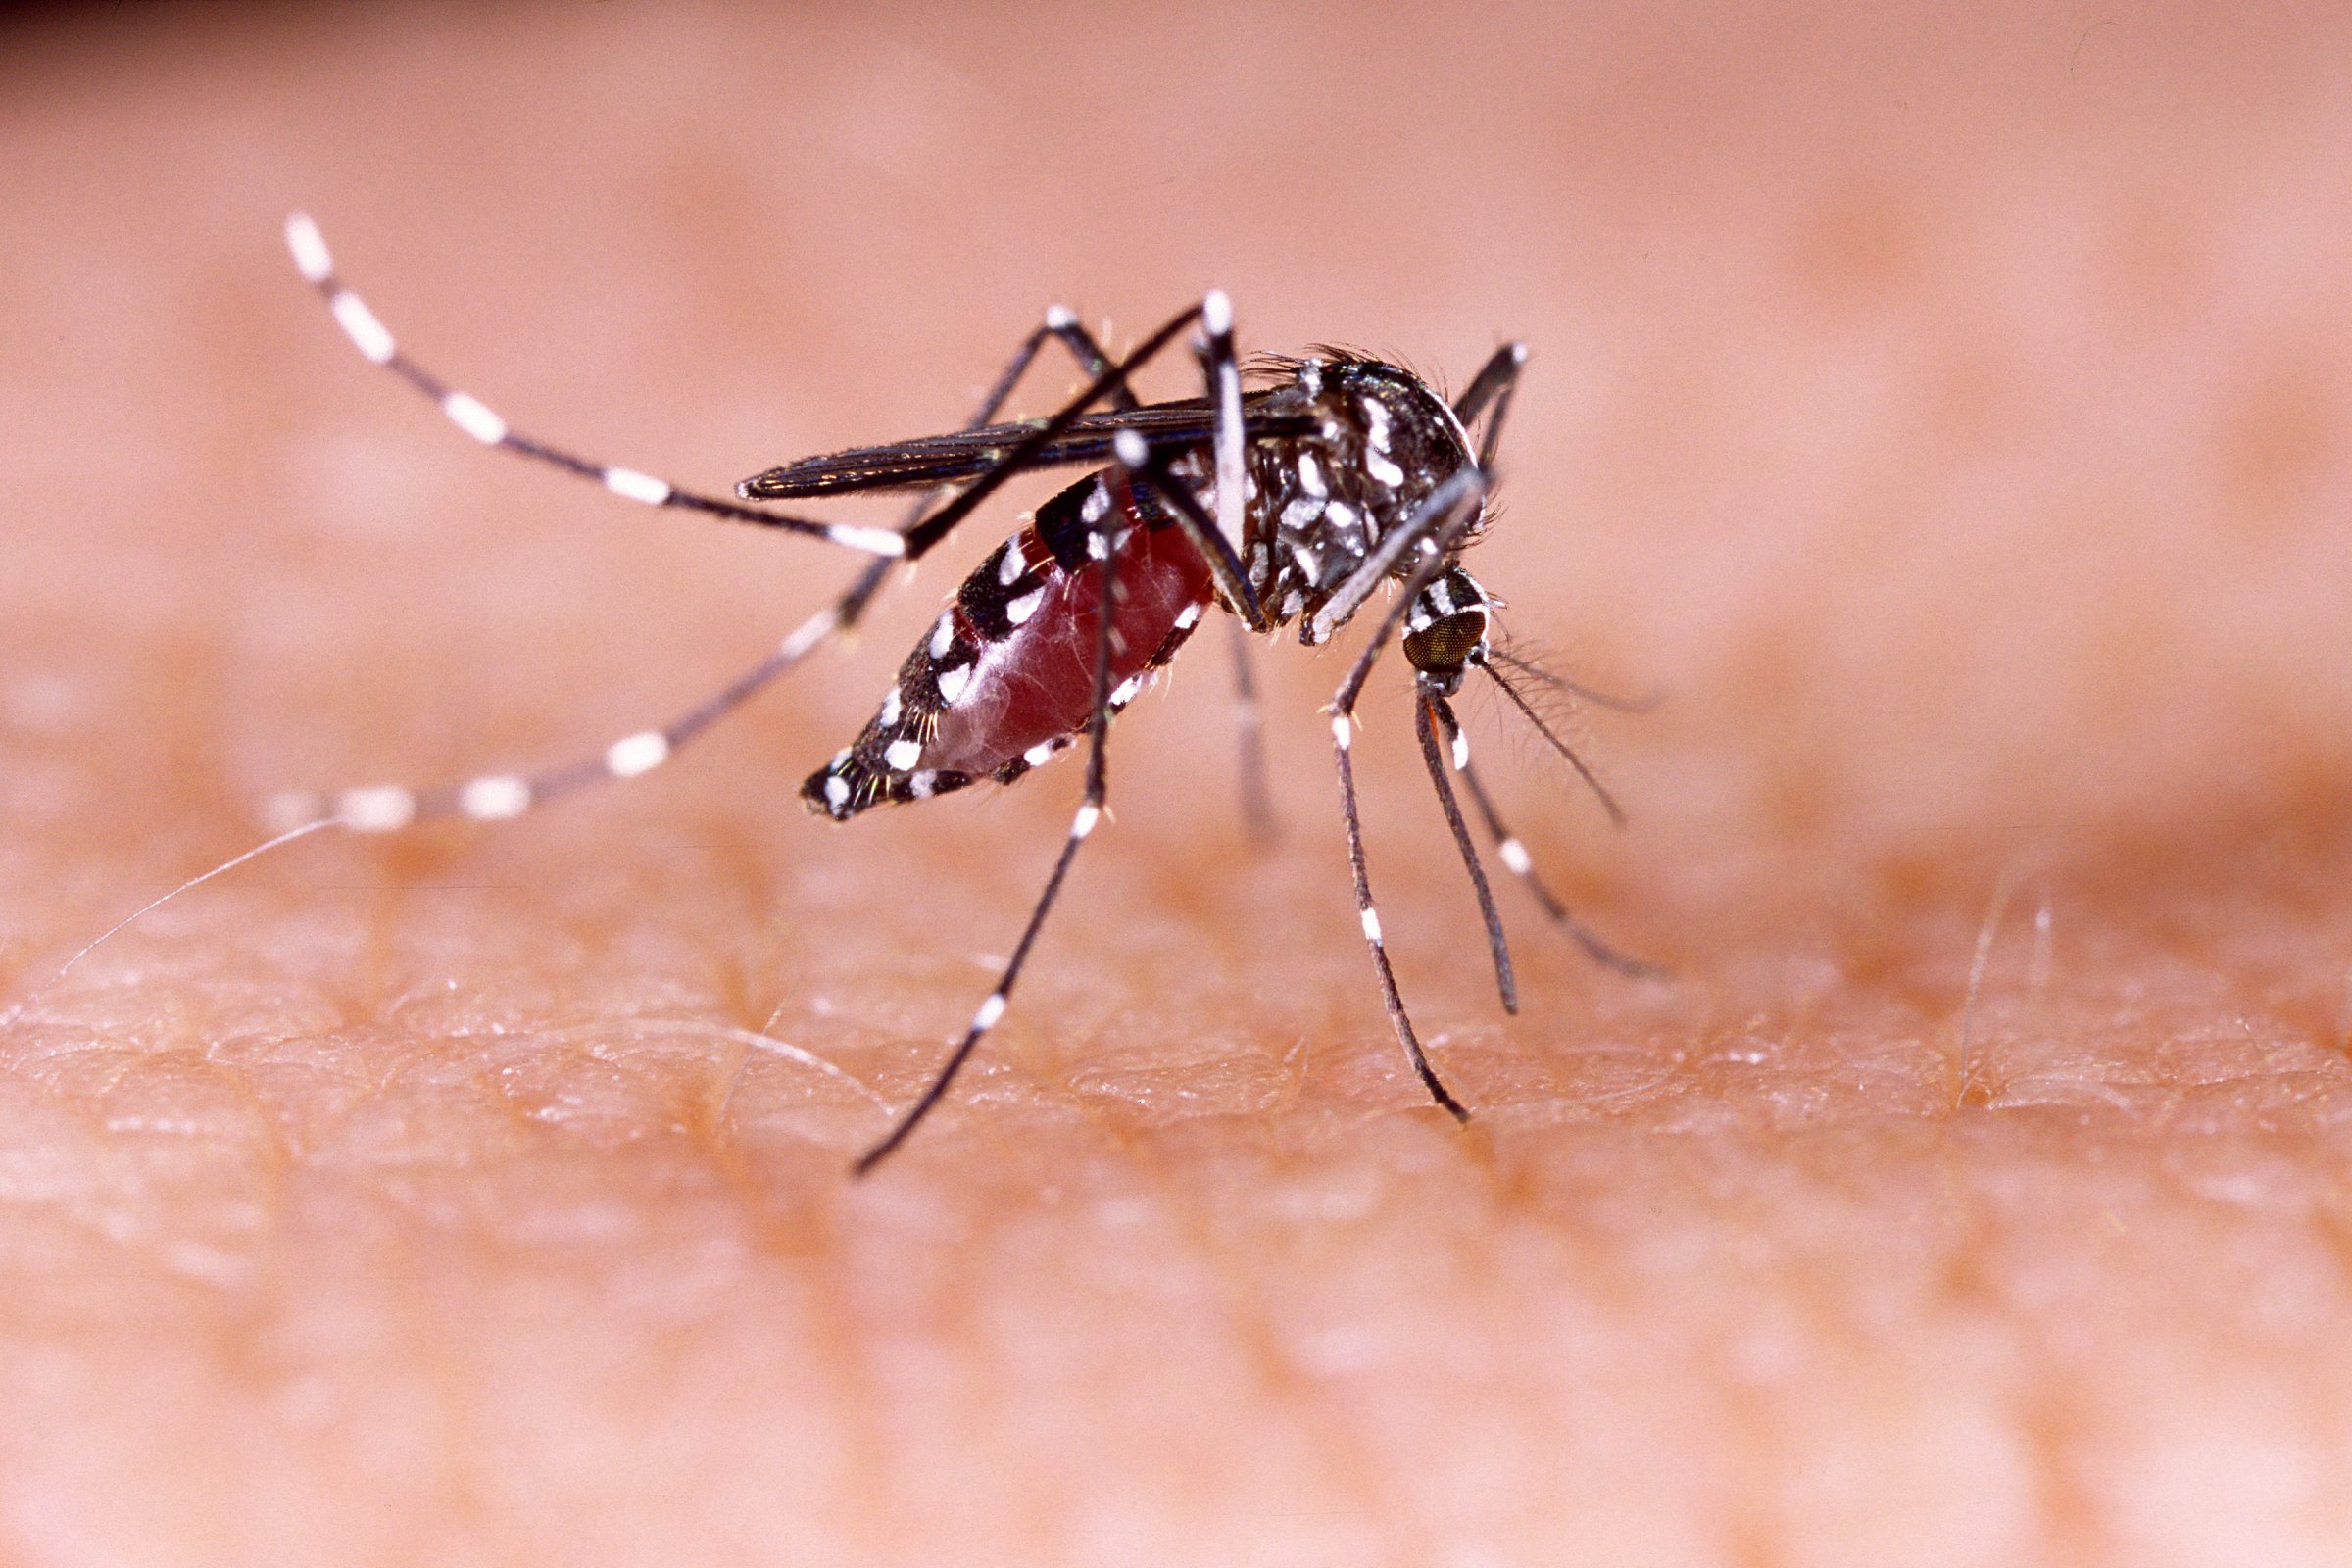 Zika virus aedes aegypti Dengue chikungunya Mayaro fever human skin